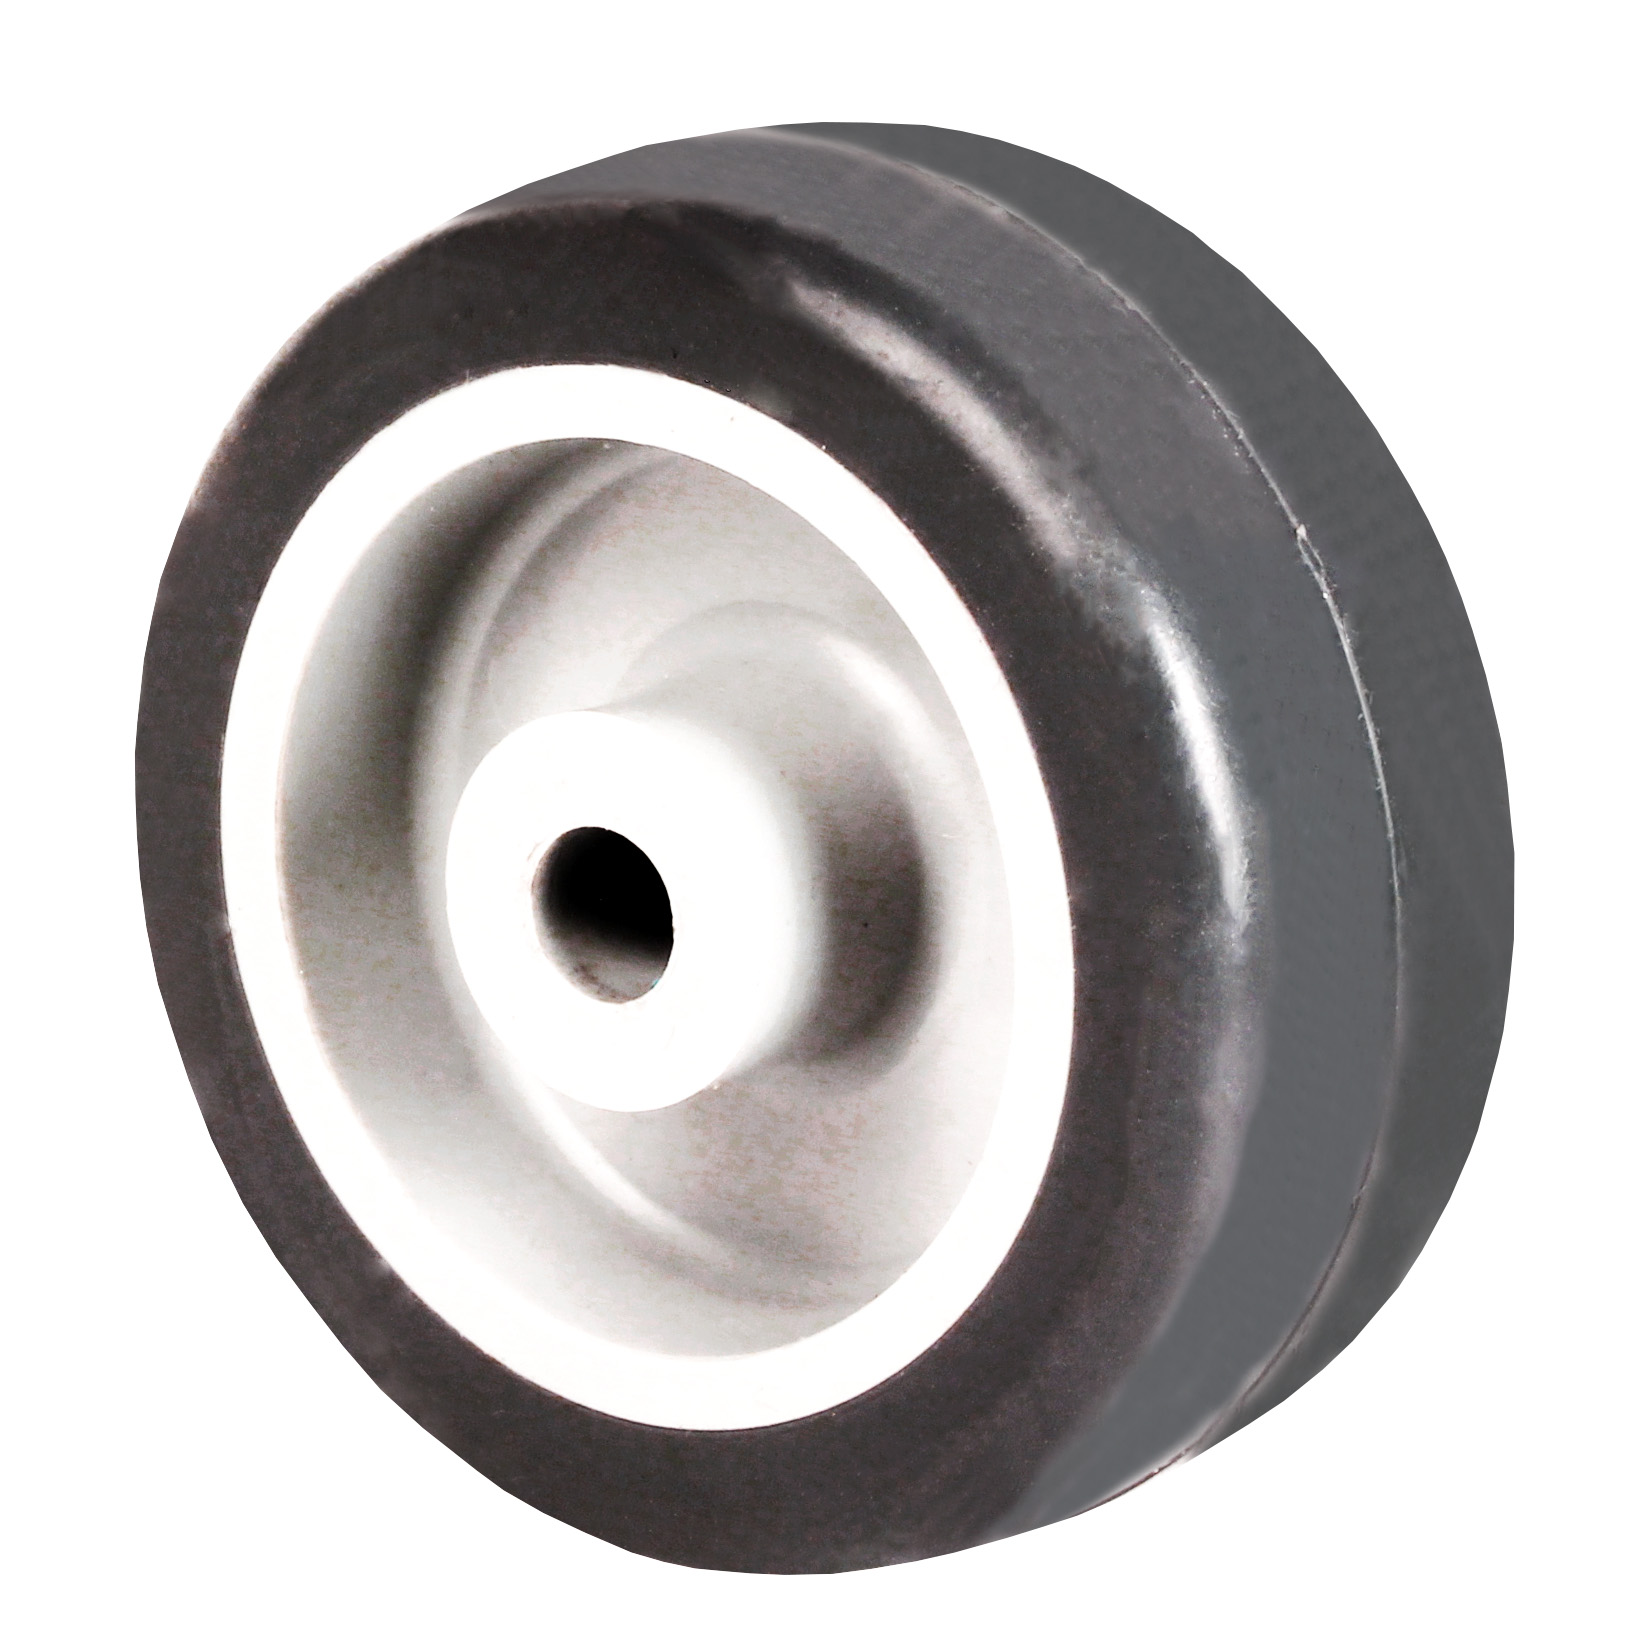 Wheel - Grey rubber - Polypropylene rim - For loads up to 120Kg - 